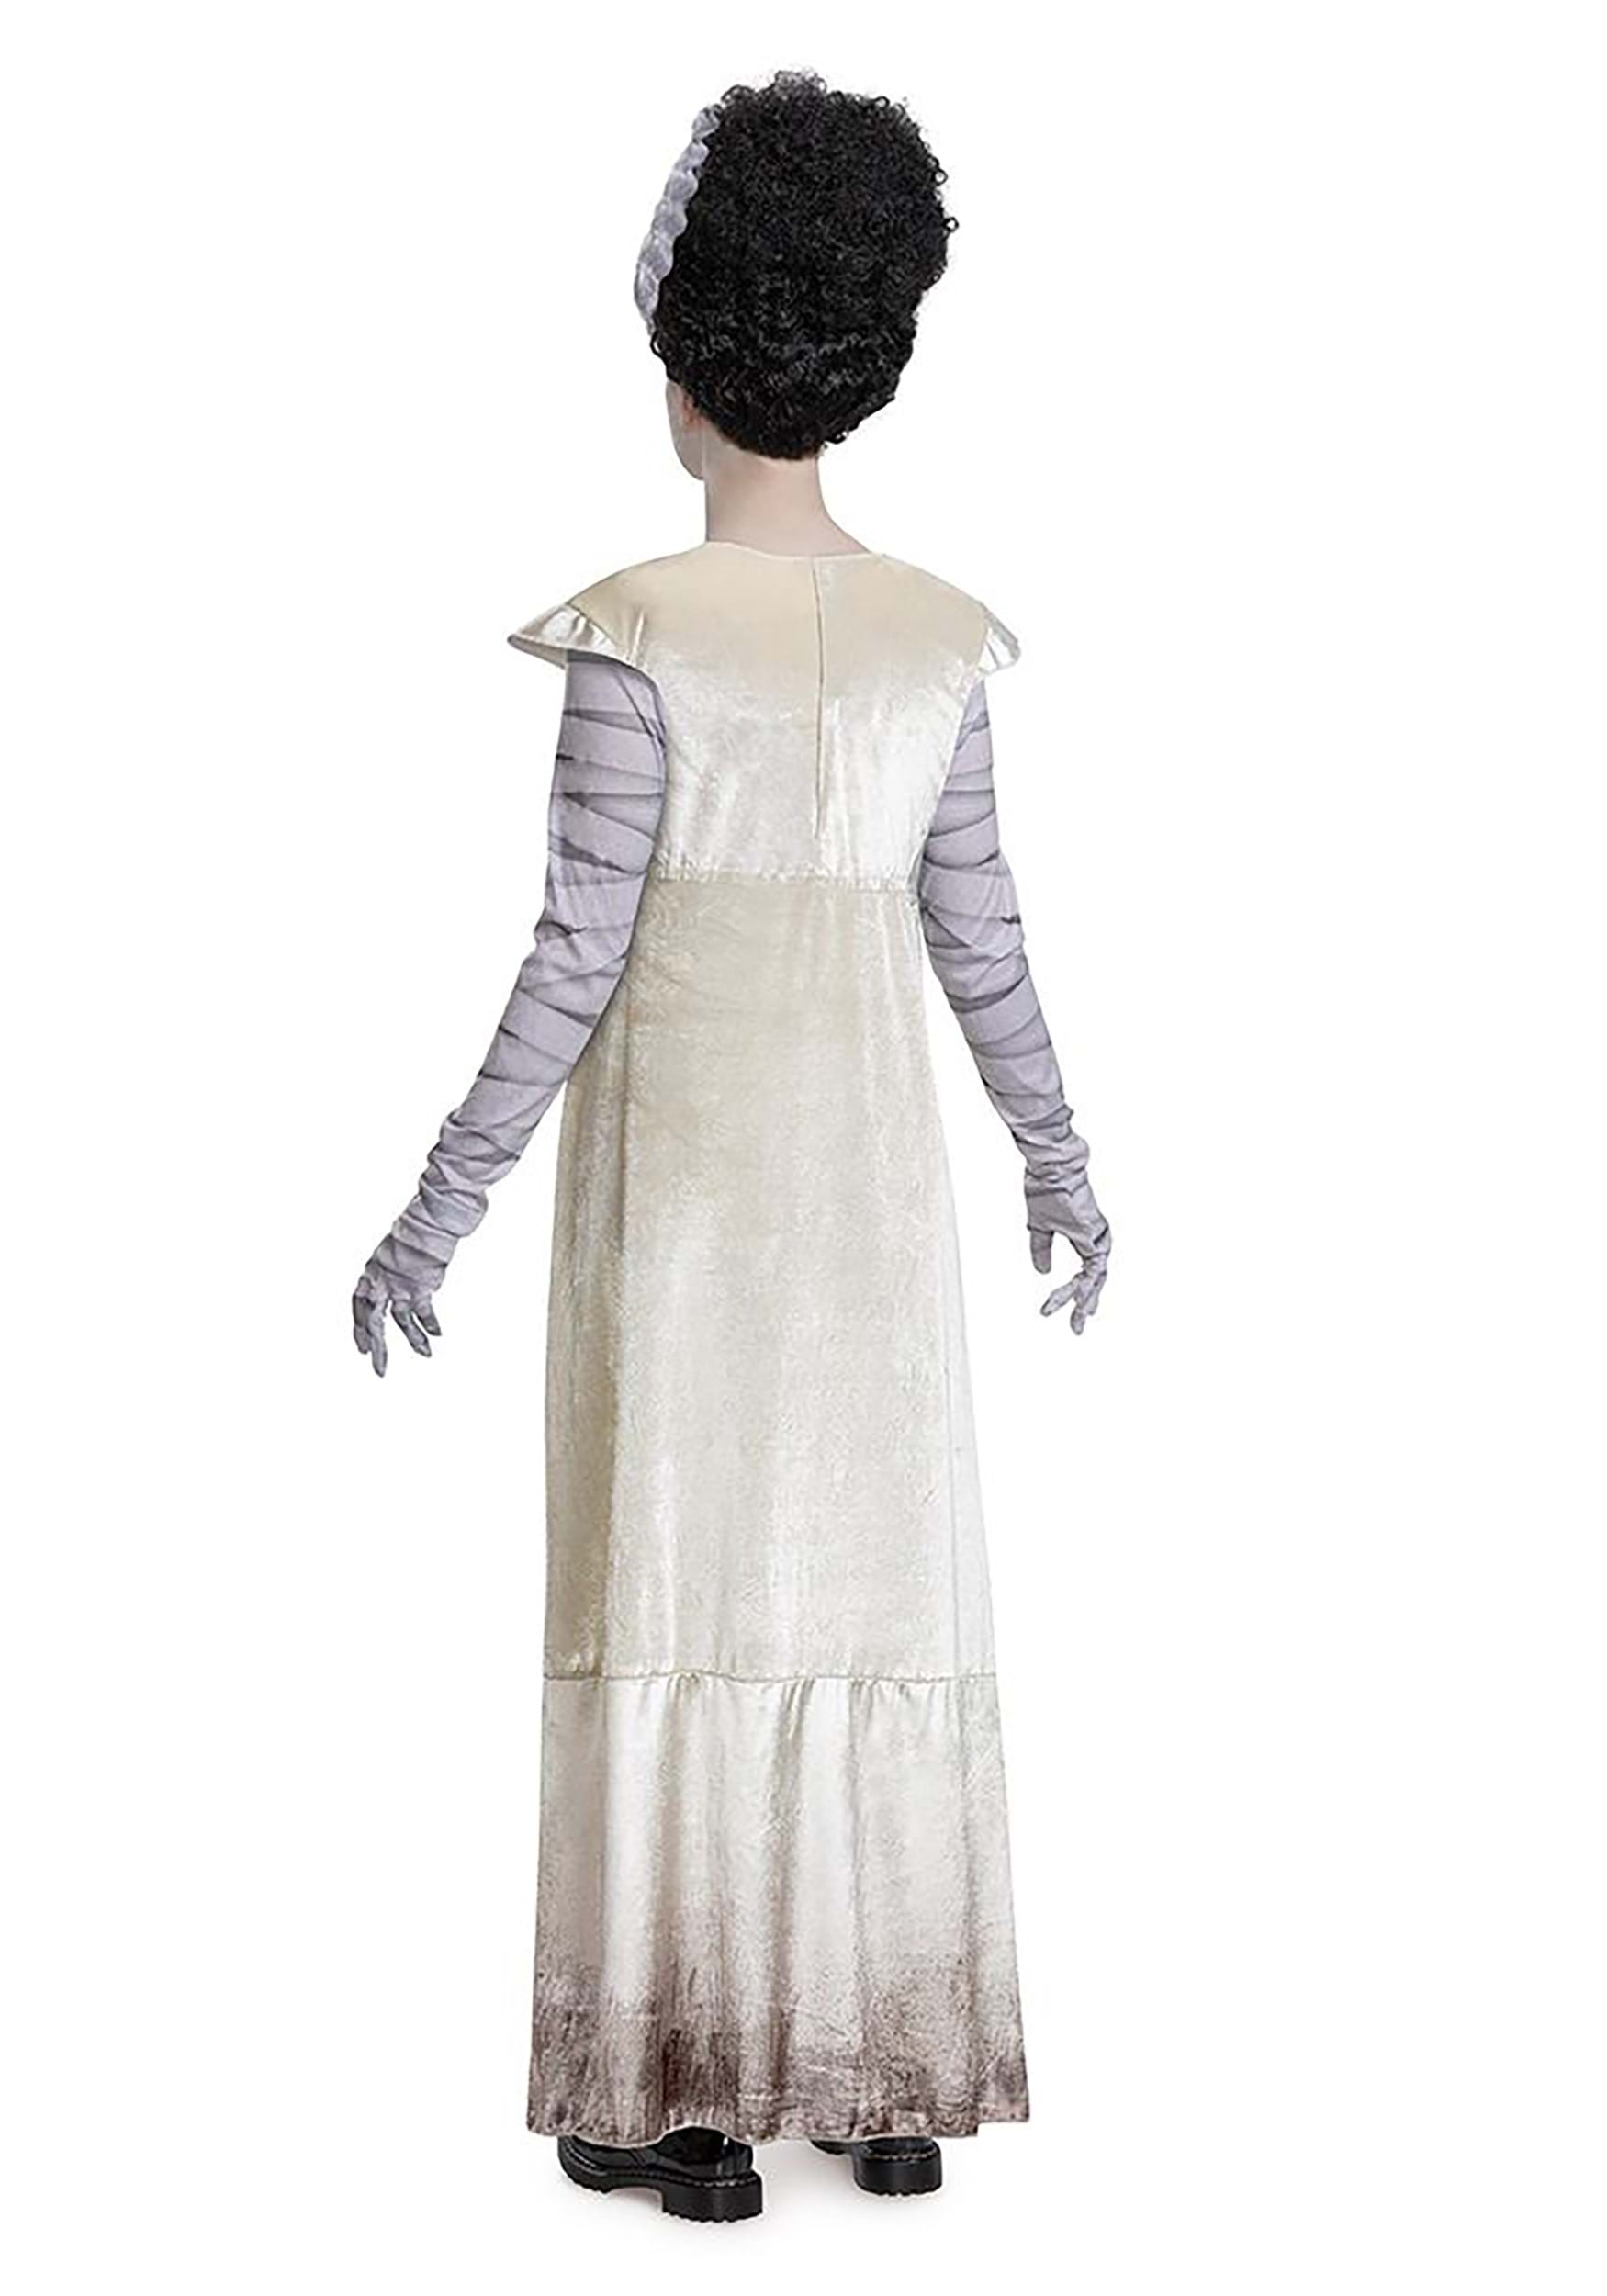 Monsters Adult Deluxe Bride Of Frankenstein Costume